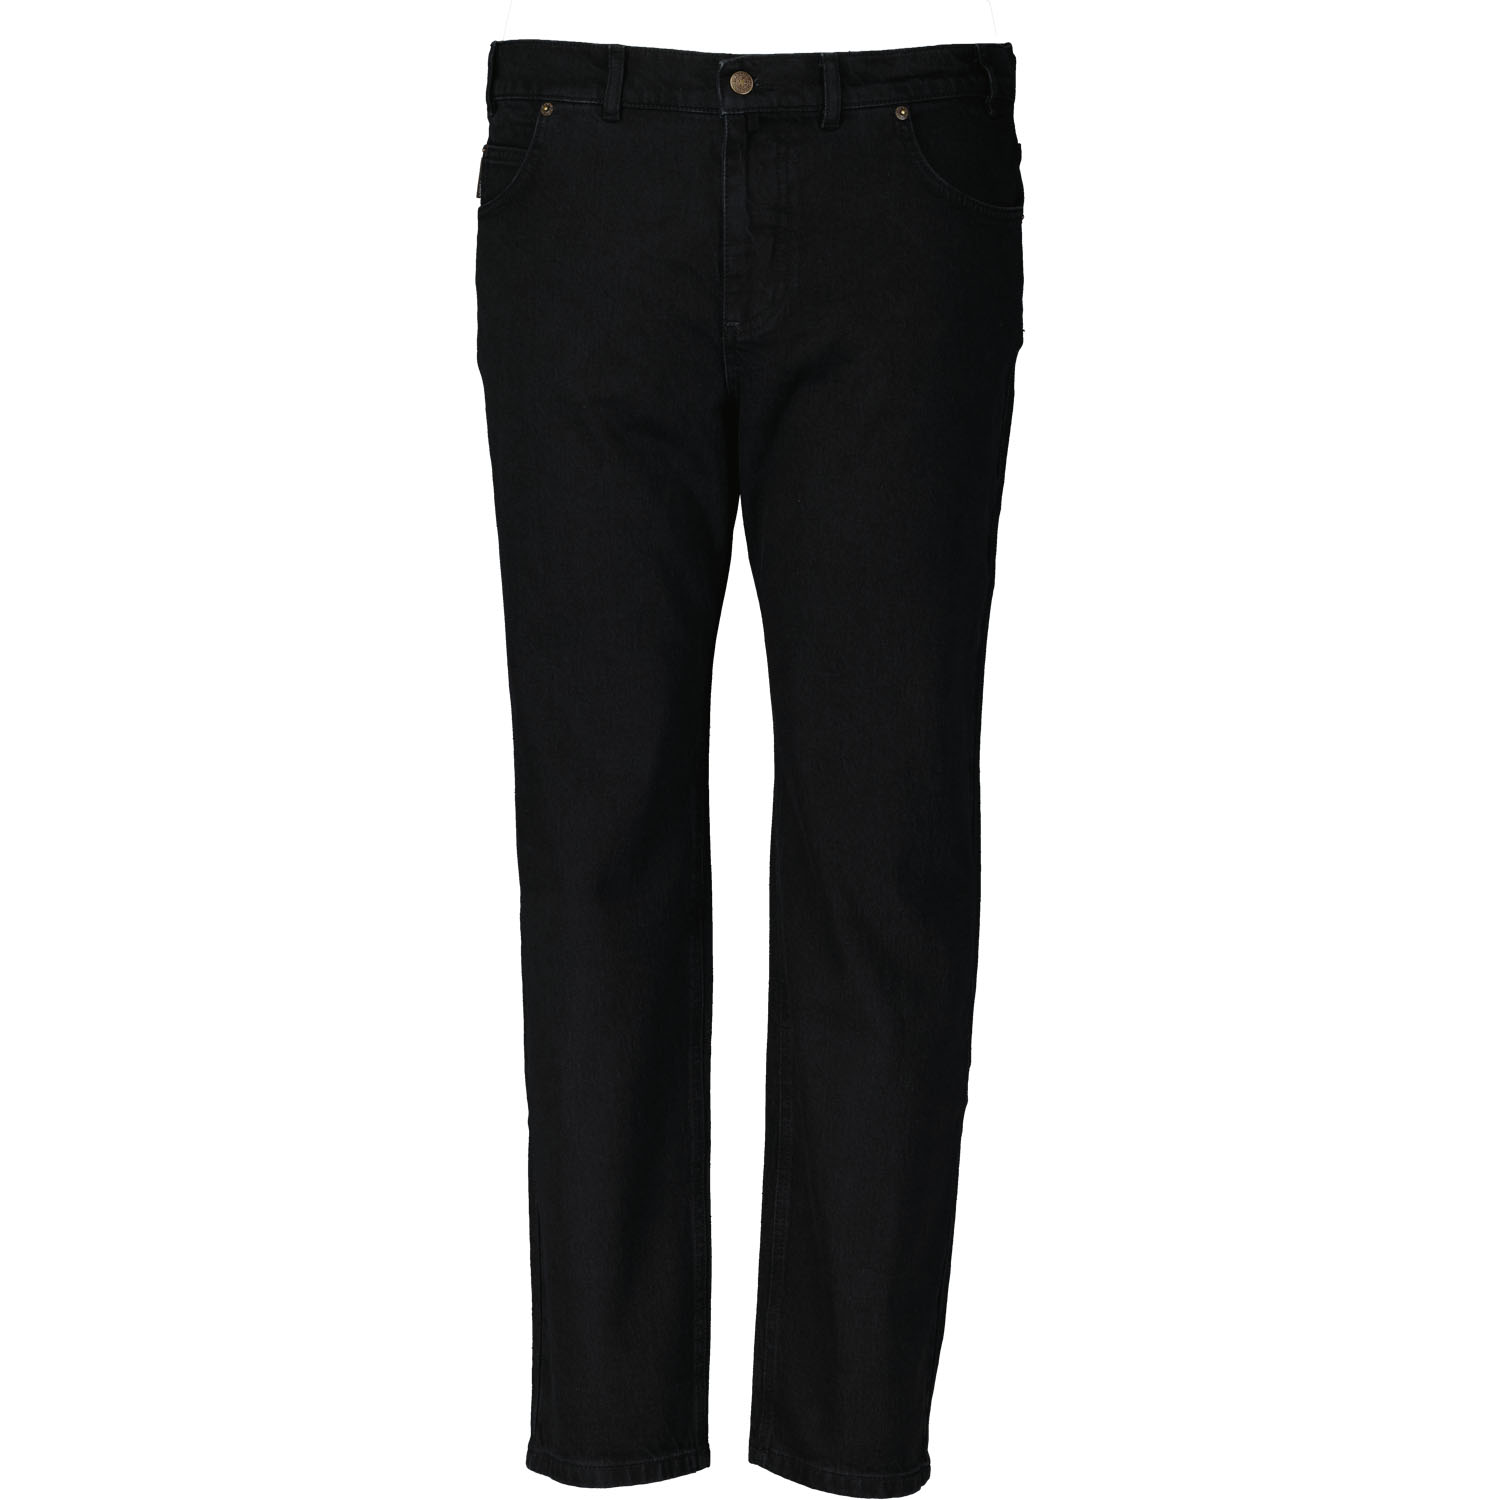 5-Pocket Jeans homme avec stretch série "COLORADO" noir by Adamo grandes tailles (Taille basse): 28 - 40